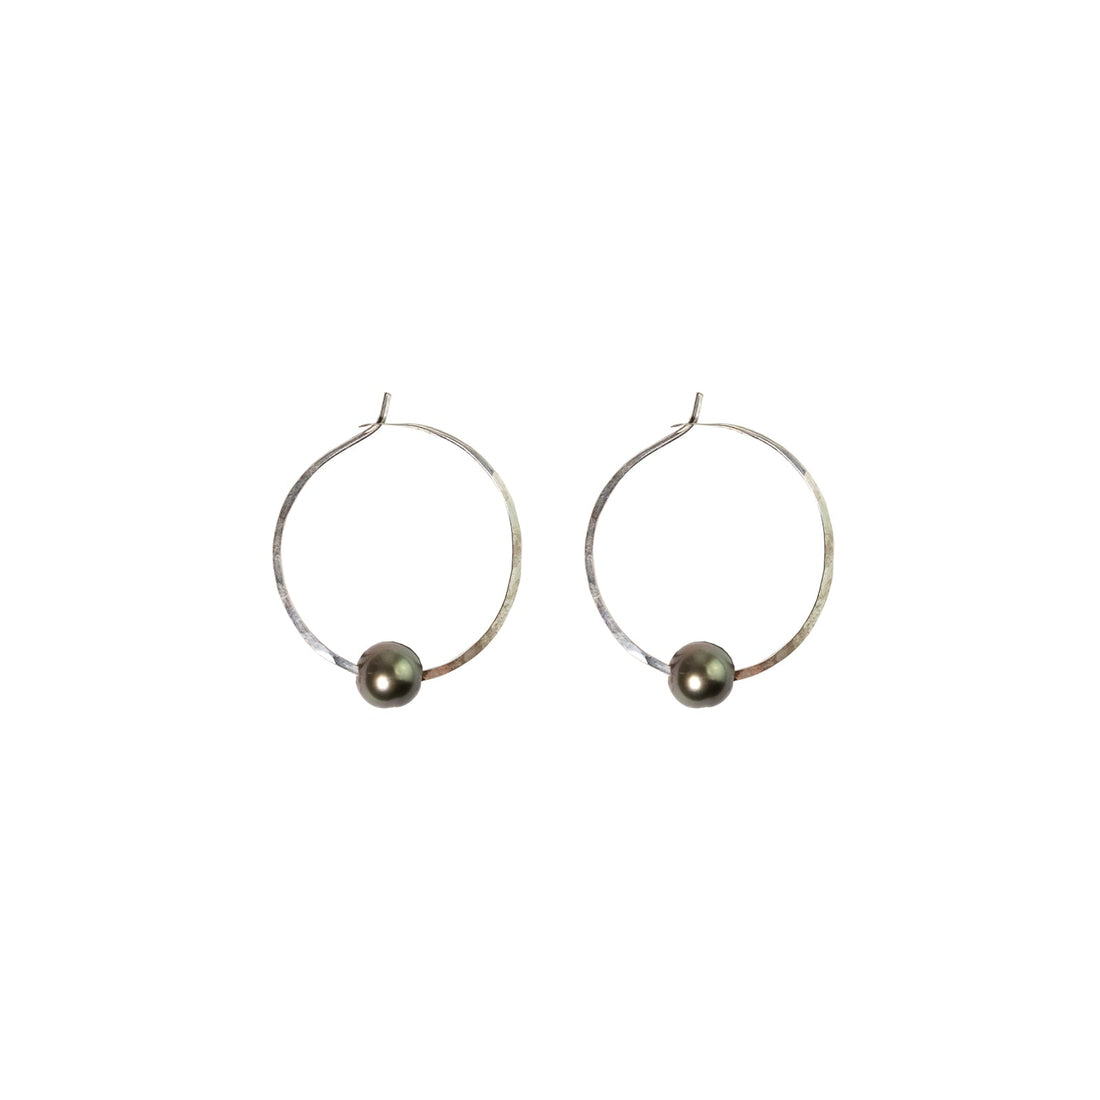 Kasia Earrings, 1.25" Silver Hoop and Tahitian Black Pearl Earrings Sayulita Sol 